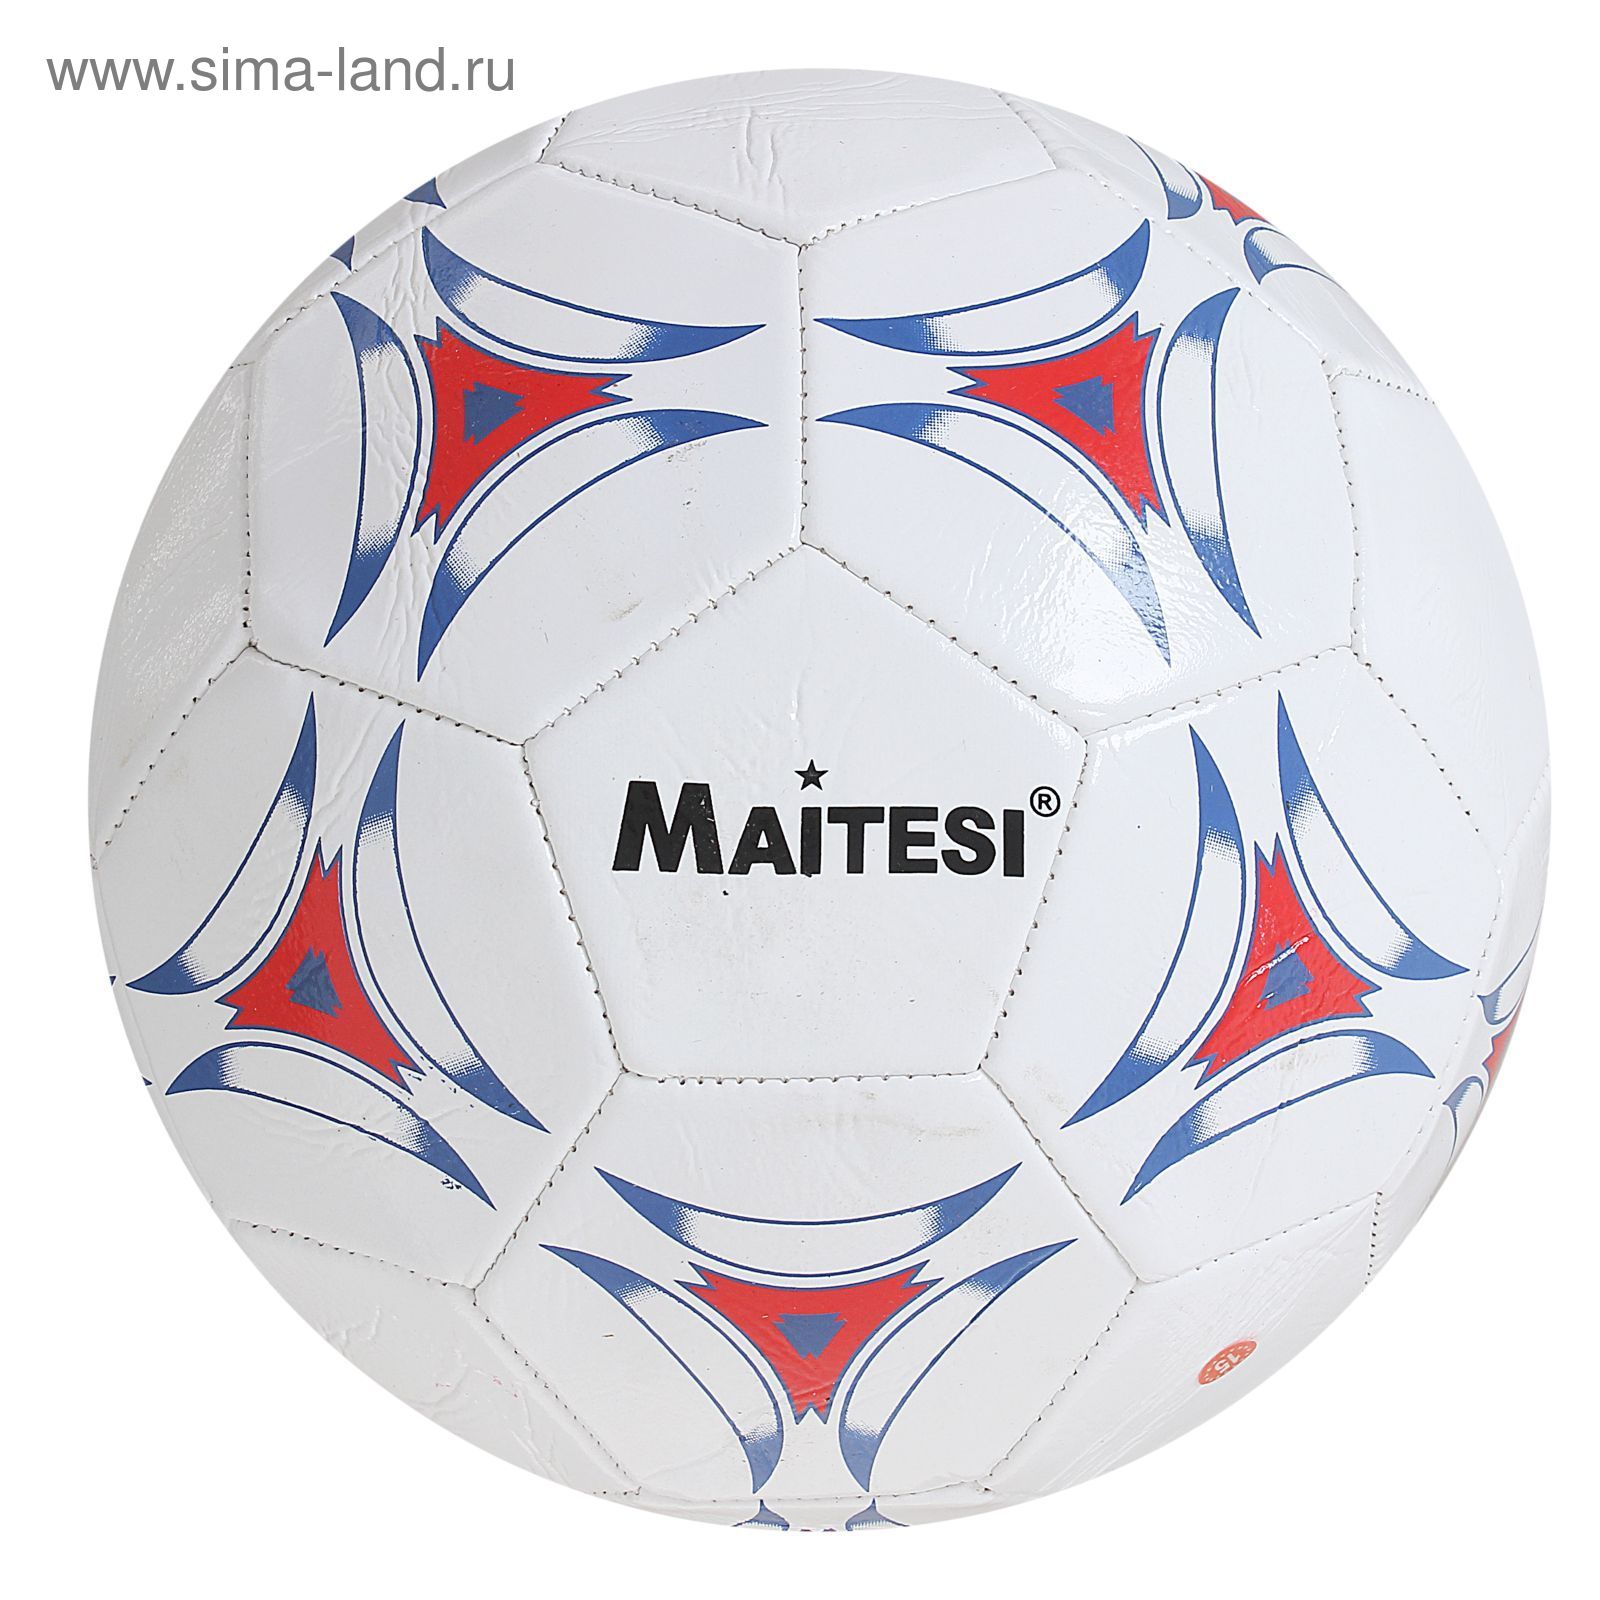 Мяч футбольный, 32 панели, PVC, 2 подслоя, машинная сшивка, размер 5, цвета микс